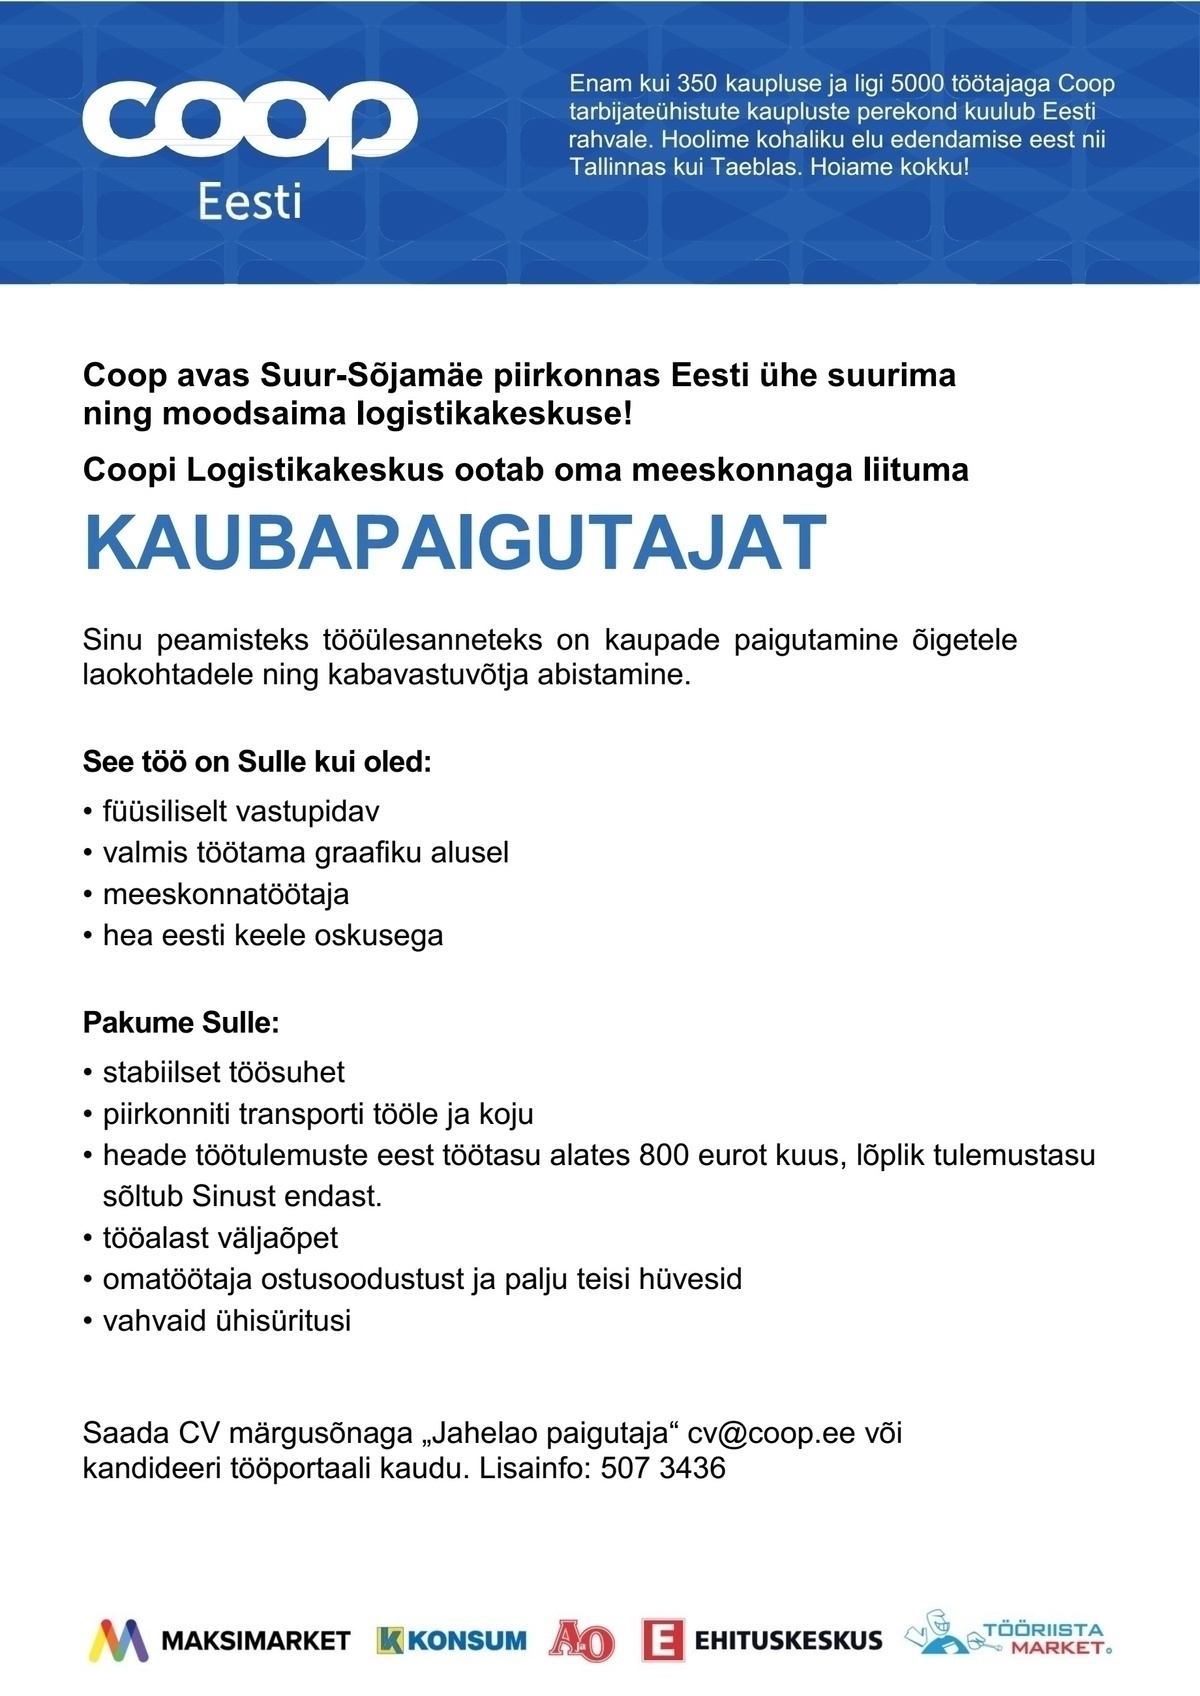 Coop Eesti Keskühistu Kaubapaigutaja (jaheladu)